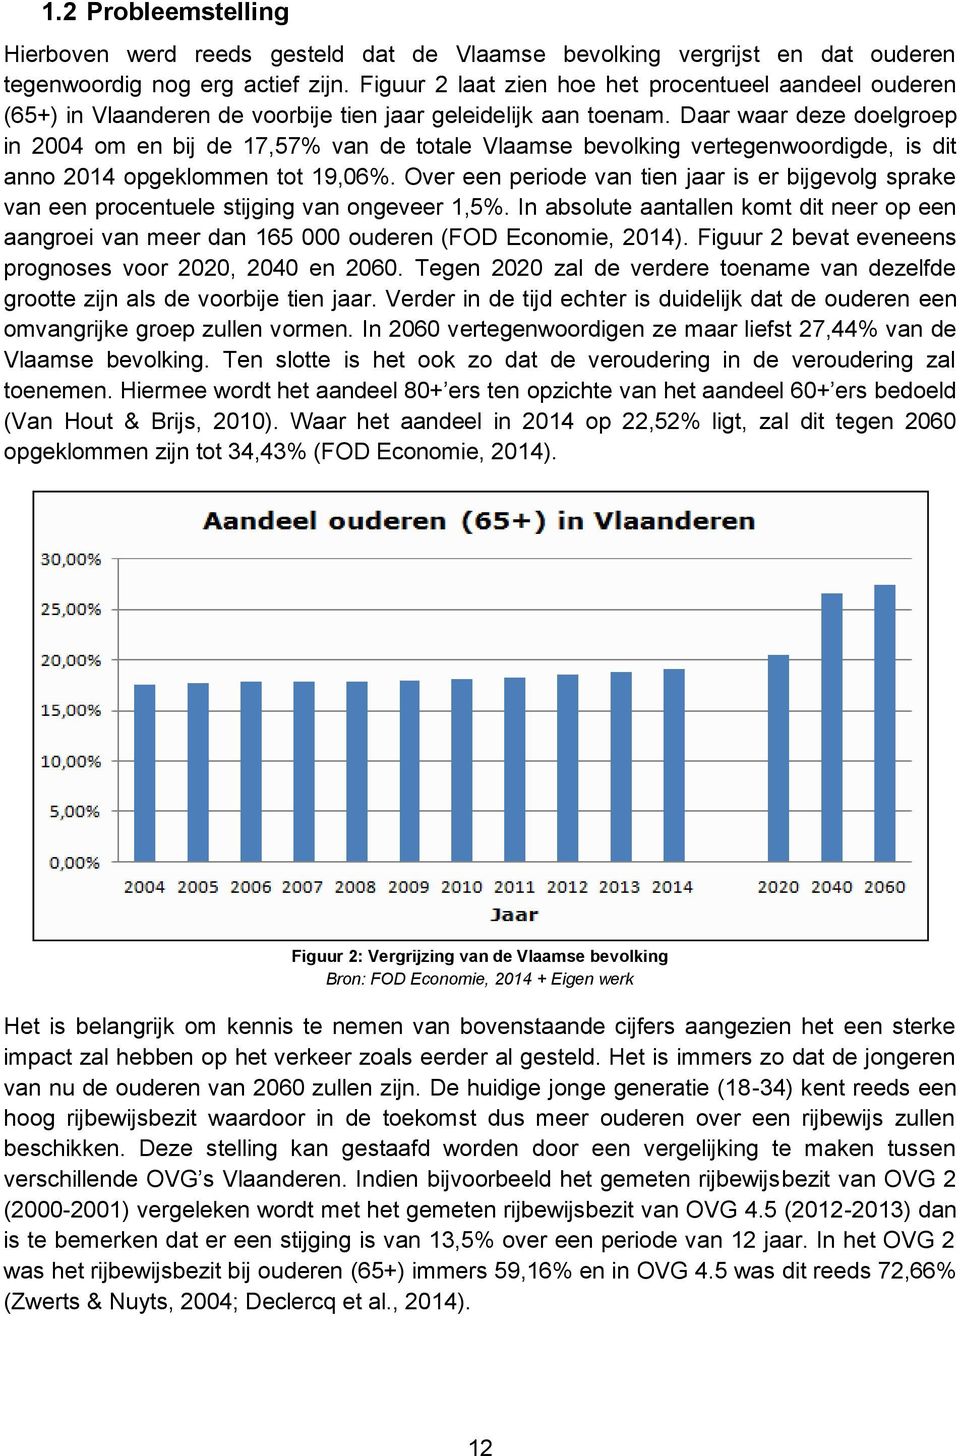 Daar waar deze doelgroep in 2004 om en bij de 17,57% van de totale Vlaamse bevolking vertegenwoordigde, is dit anno 2014 opgeklommen tot 19,06%.